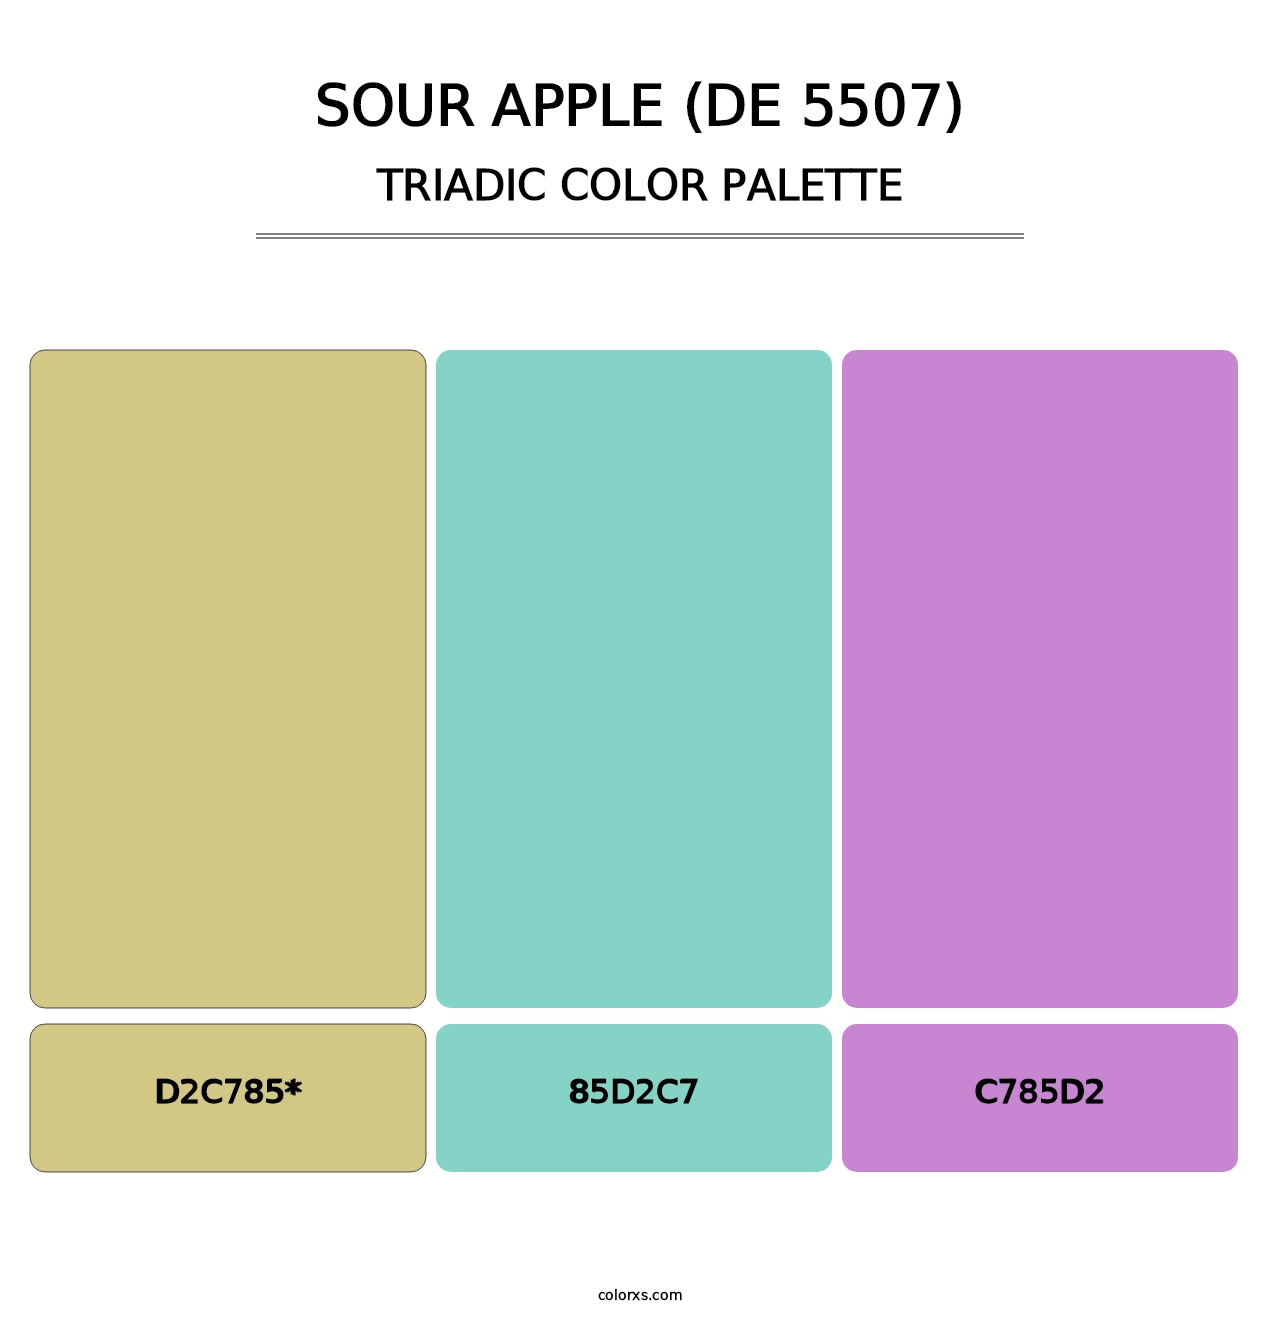 Sour Apple (DE 5507) - Triadic Color Palette